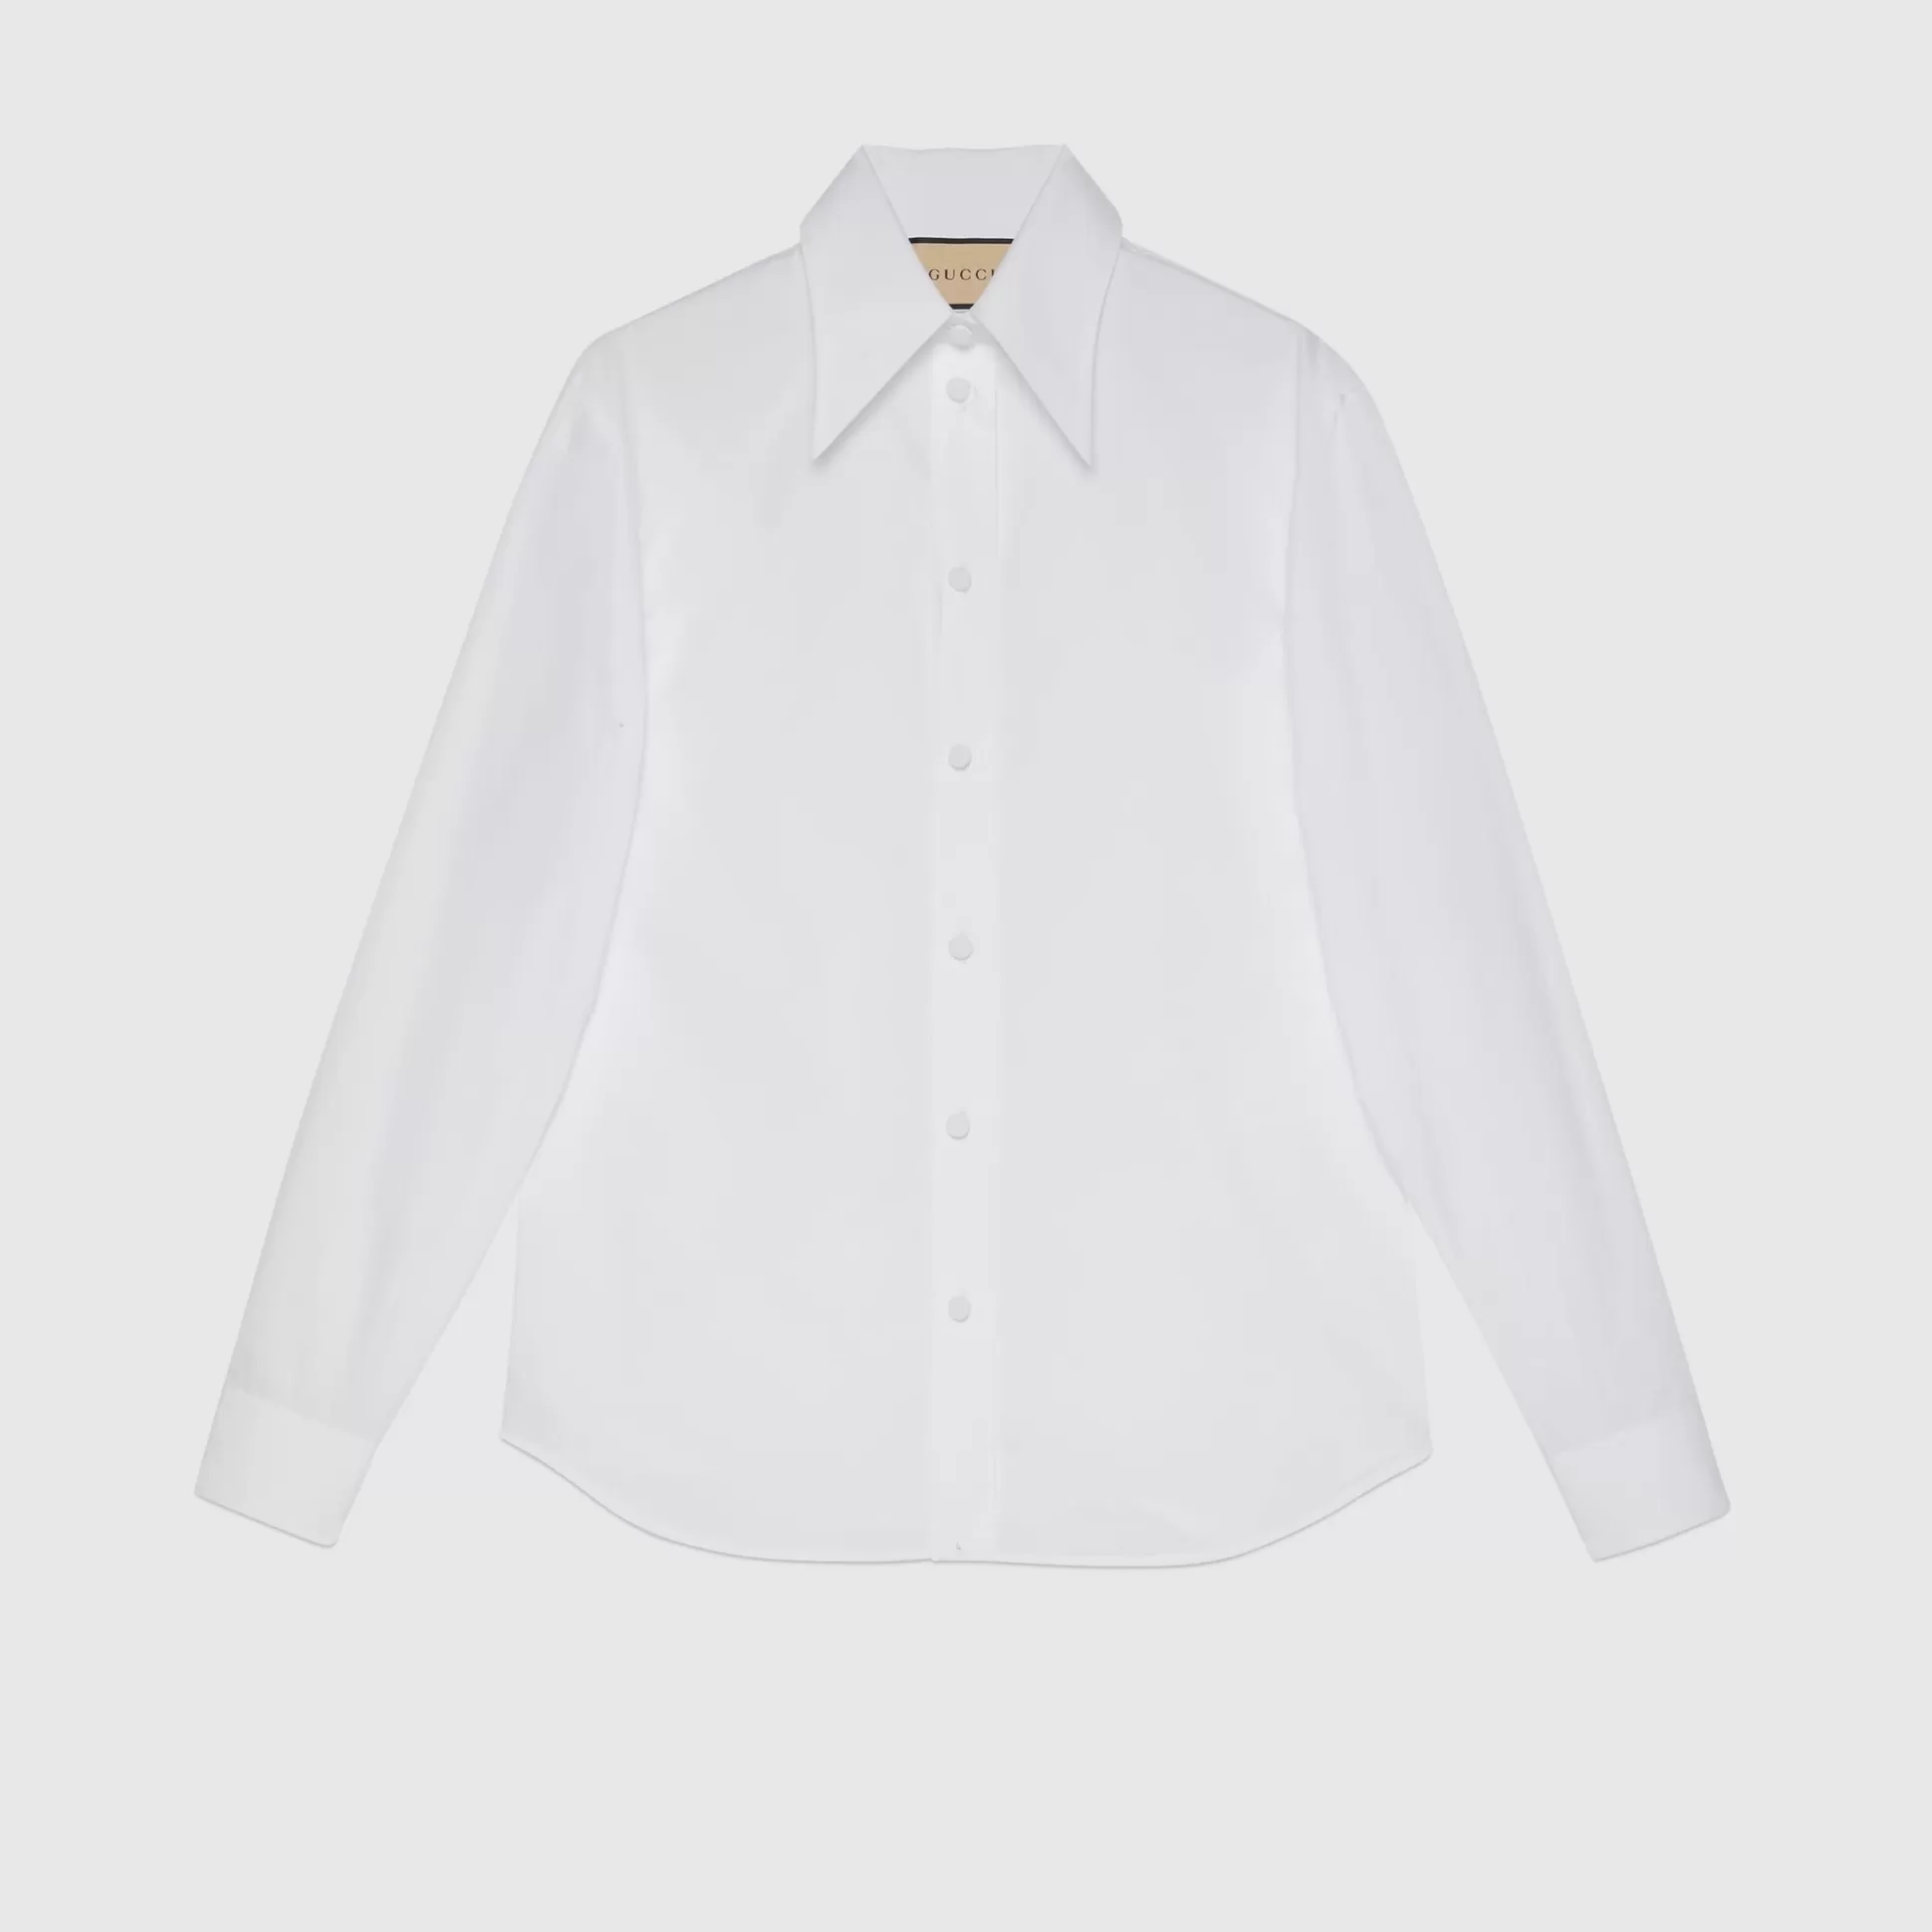 GUCCI Cotton Poplin Shirt-Women Tops & Shirts